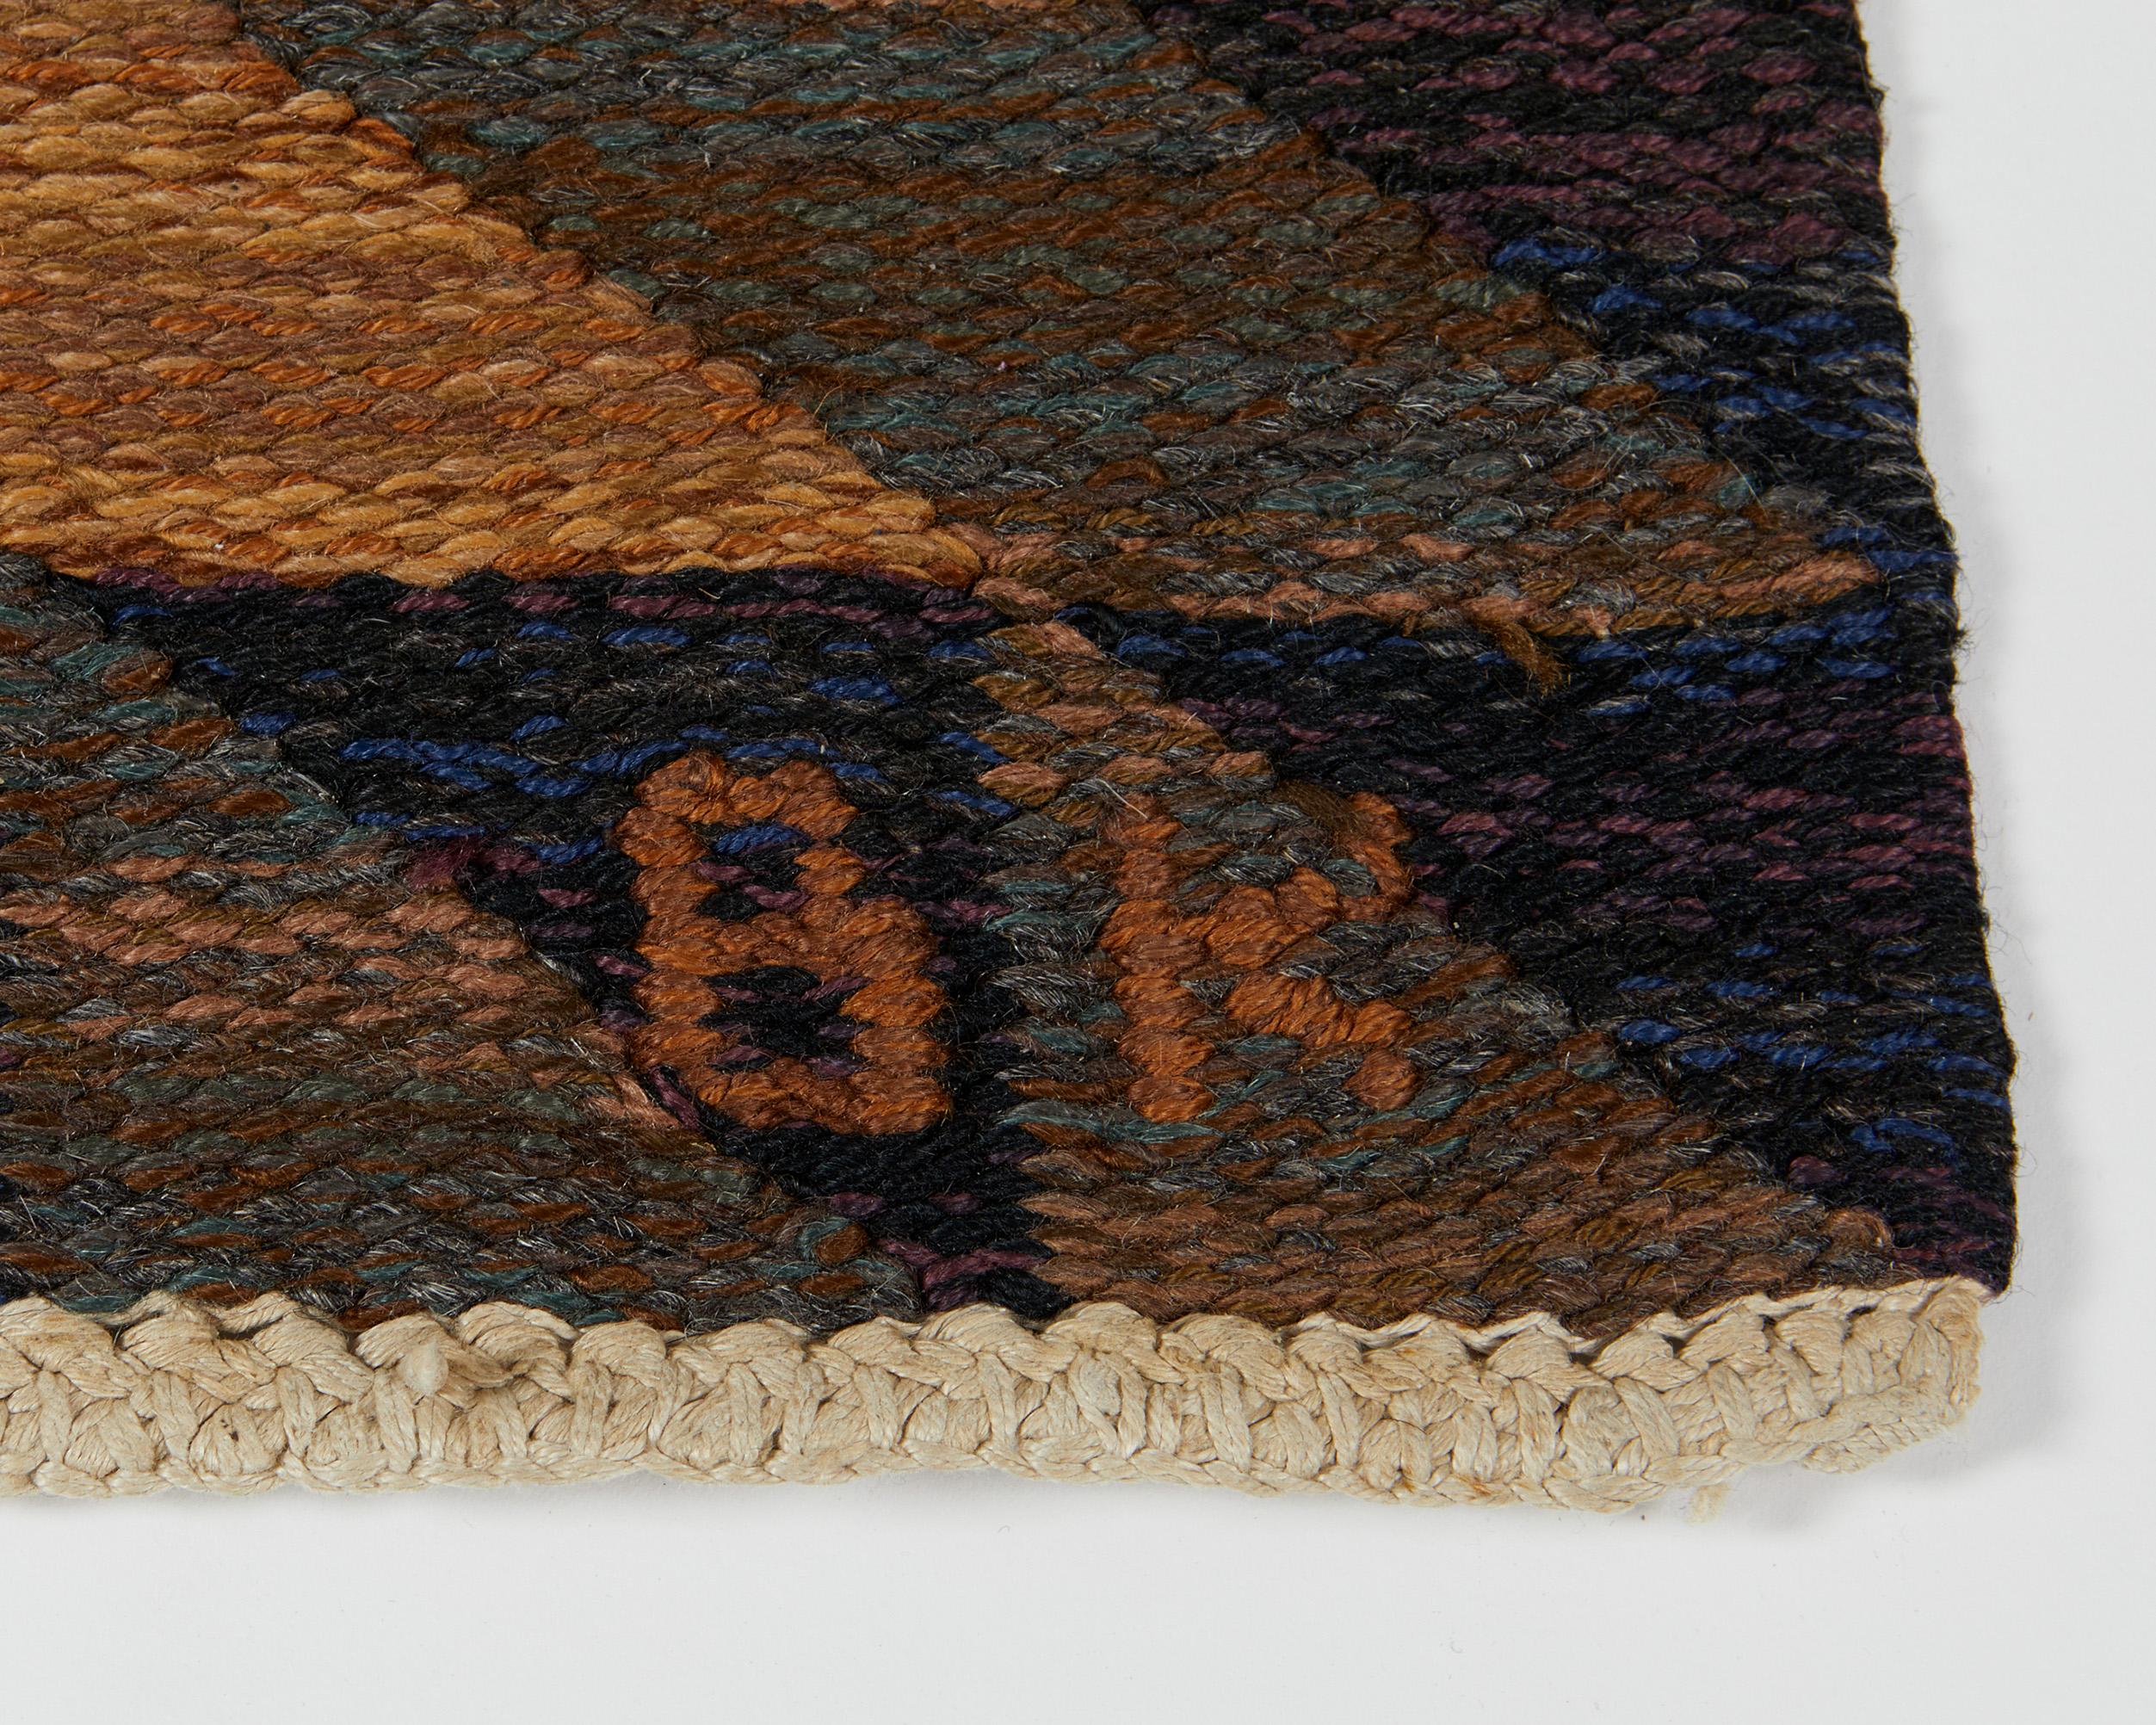 Fabric Rug “Mexico” Designed by Berit Koenig for Svensk Hemslöjd, Sweden, 1960's